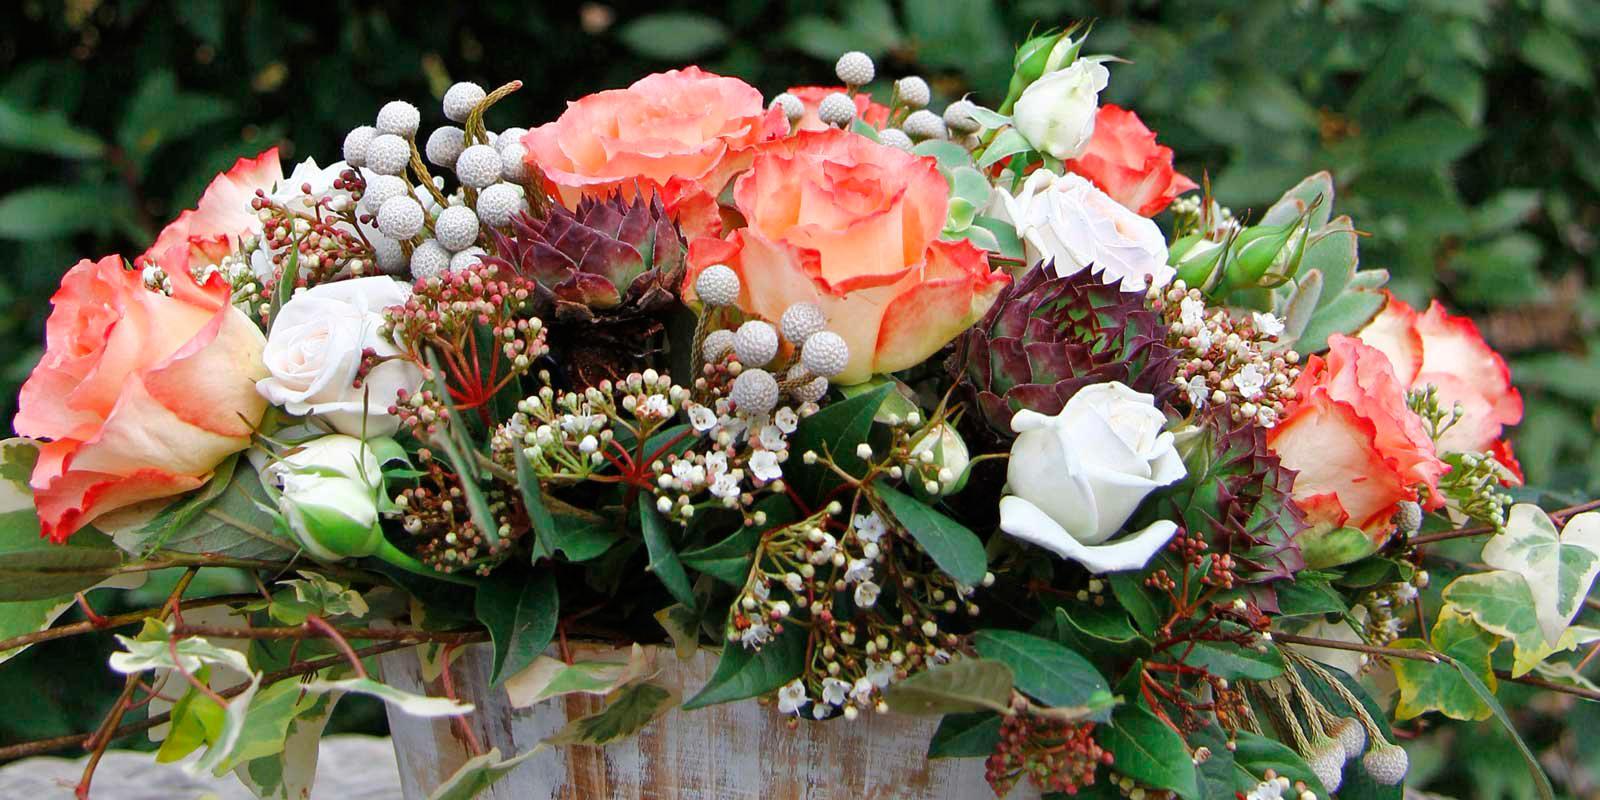 Come seccare le rose: consigli - Idee Green  Essiccare fiori, Fiori  secchi, Petali di rosa